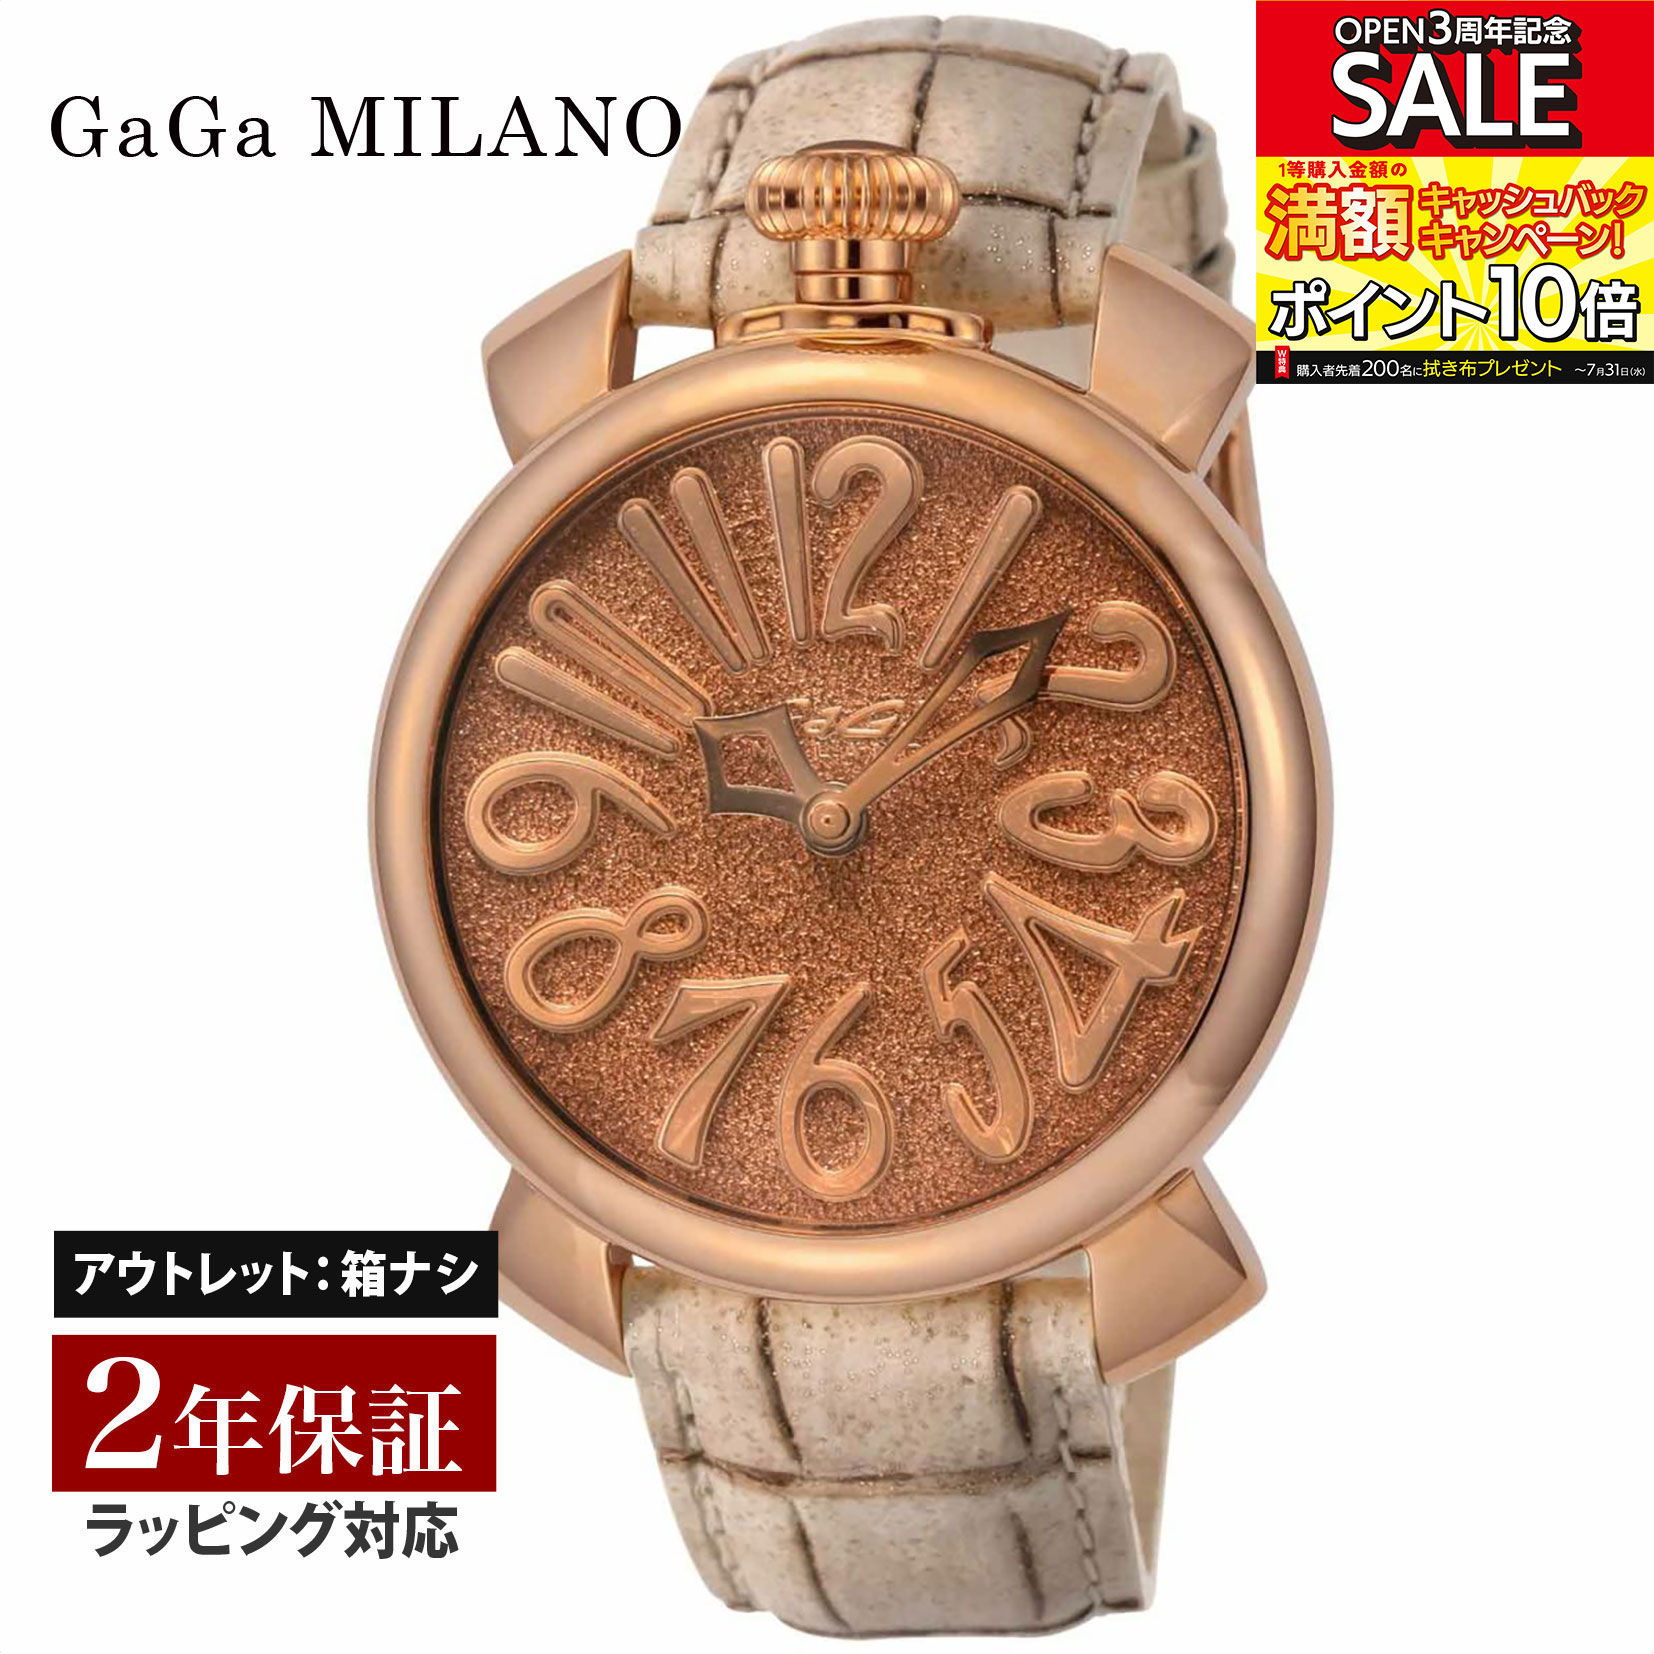 【クリアランスSALE】 GaGaMILAN ガガミラノ MANUALE40MM クォーツ ユニセックス ブラウン 5221.03 腕時計 高級腕時計 ブランド 